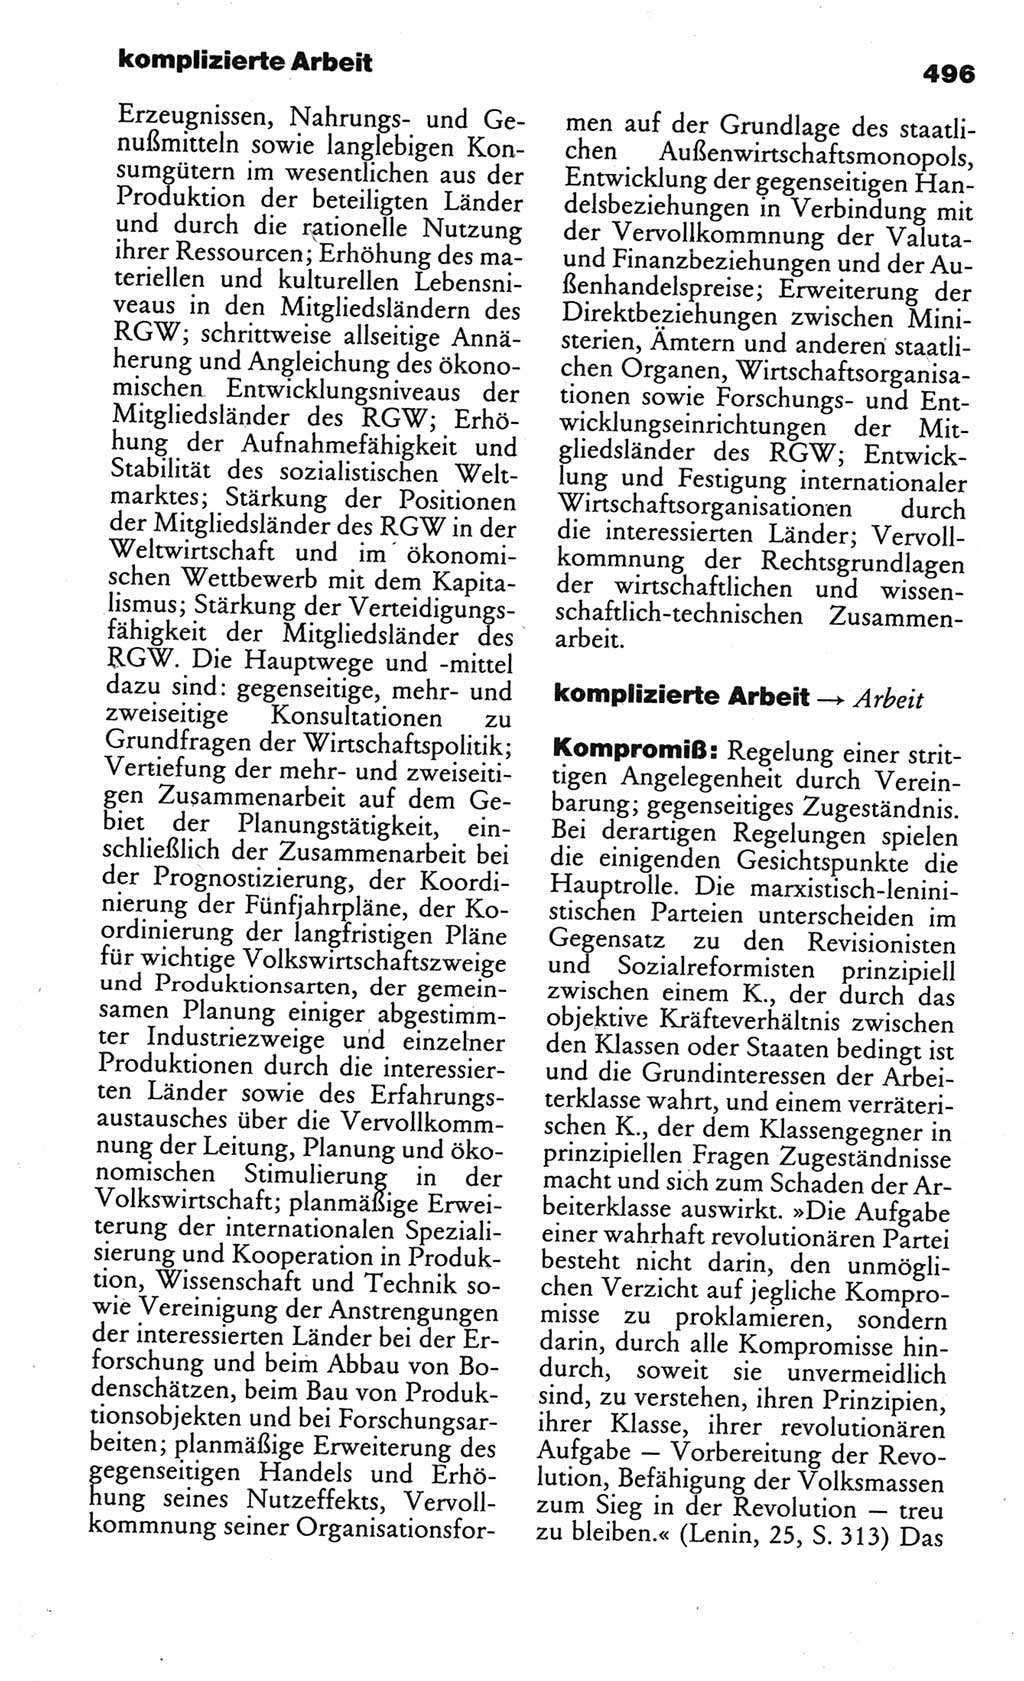 Kleines politisches Wörterbuch [Deutsche Demokratische Republik (DDR)] 1986, Seite 496 (Kl. pol. Wb. DDR 1986, S. 496)